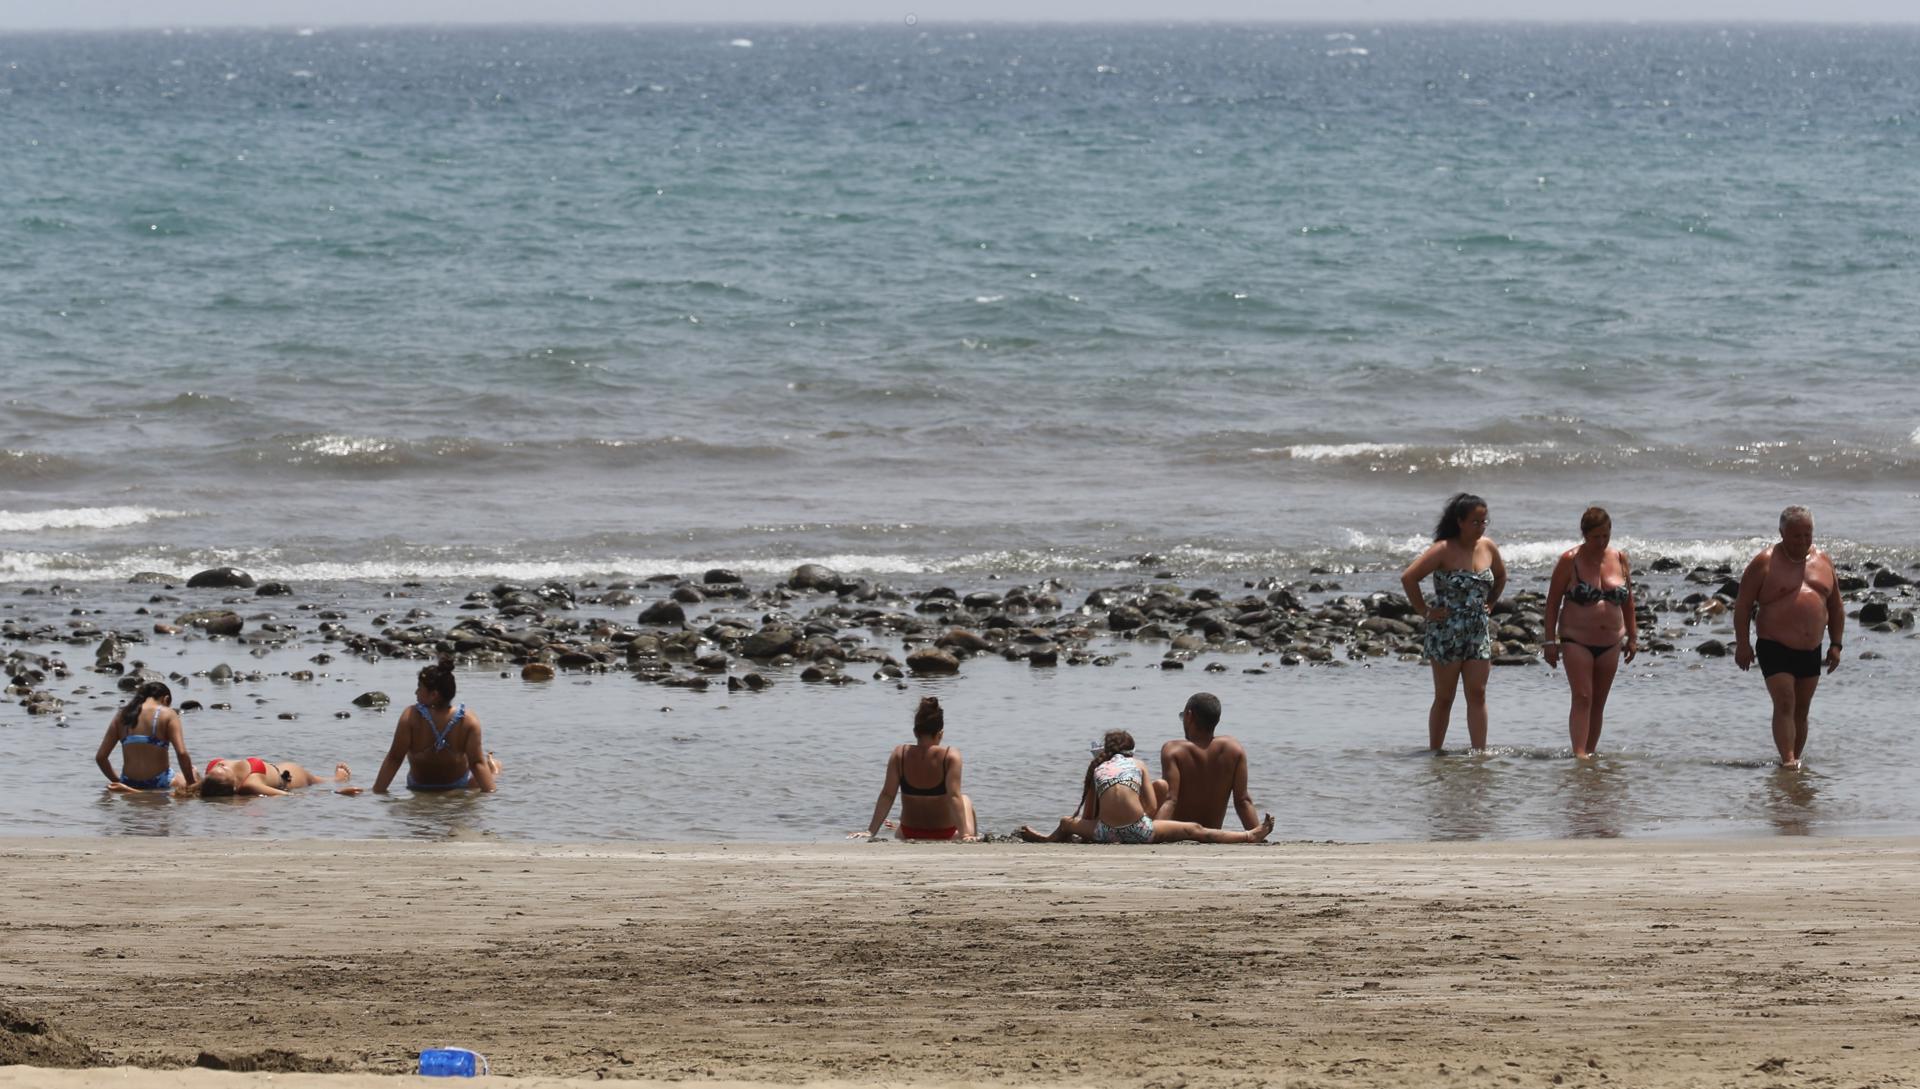 Varias personas se refrescan en una charca formada en la orilla de la playa de Maspalomas, en Gran Canaria. EFE/ Elvira Urquijo A.